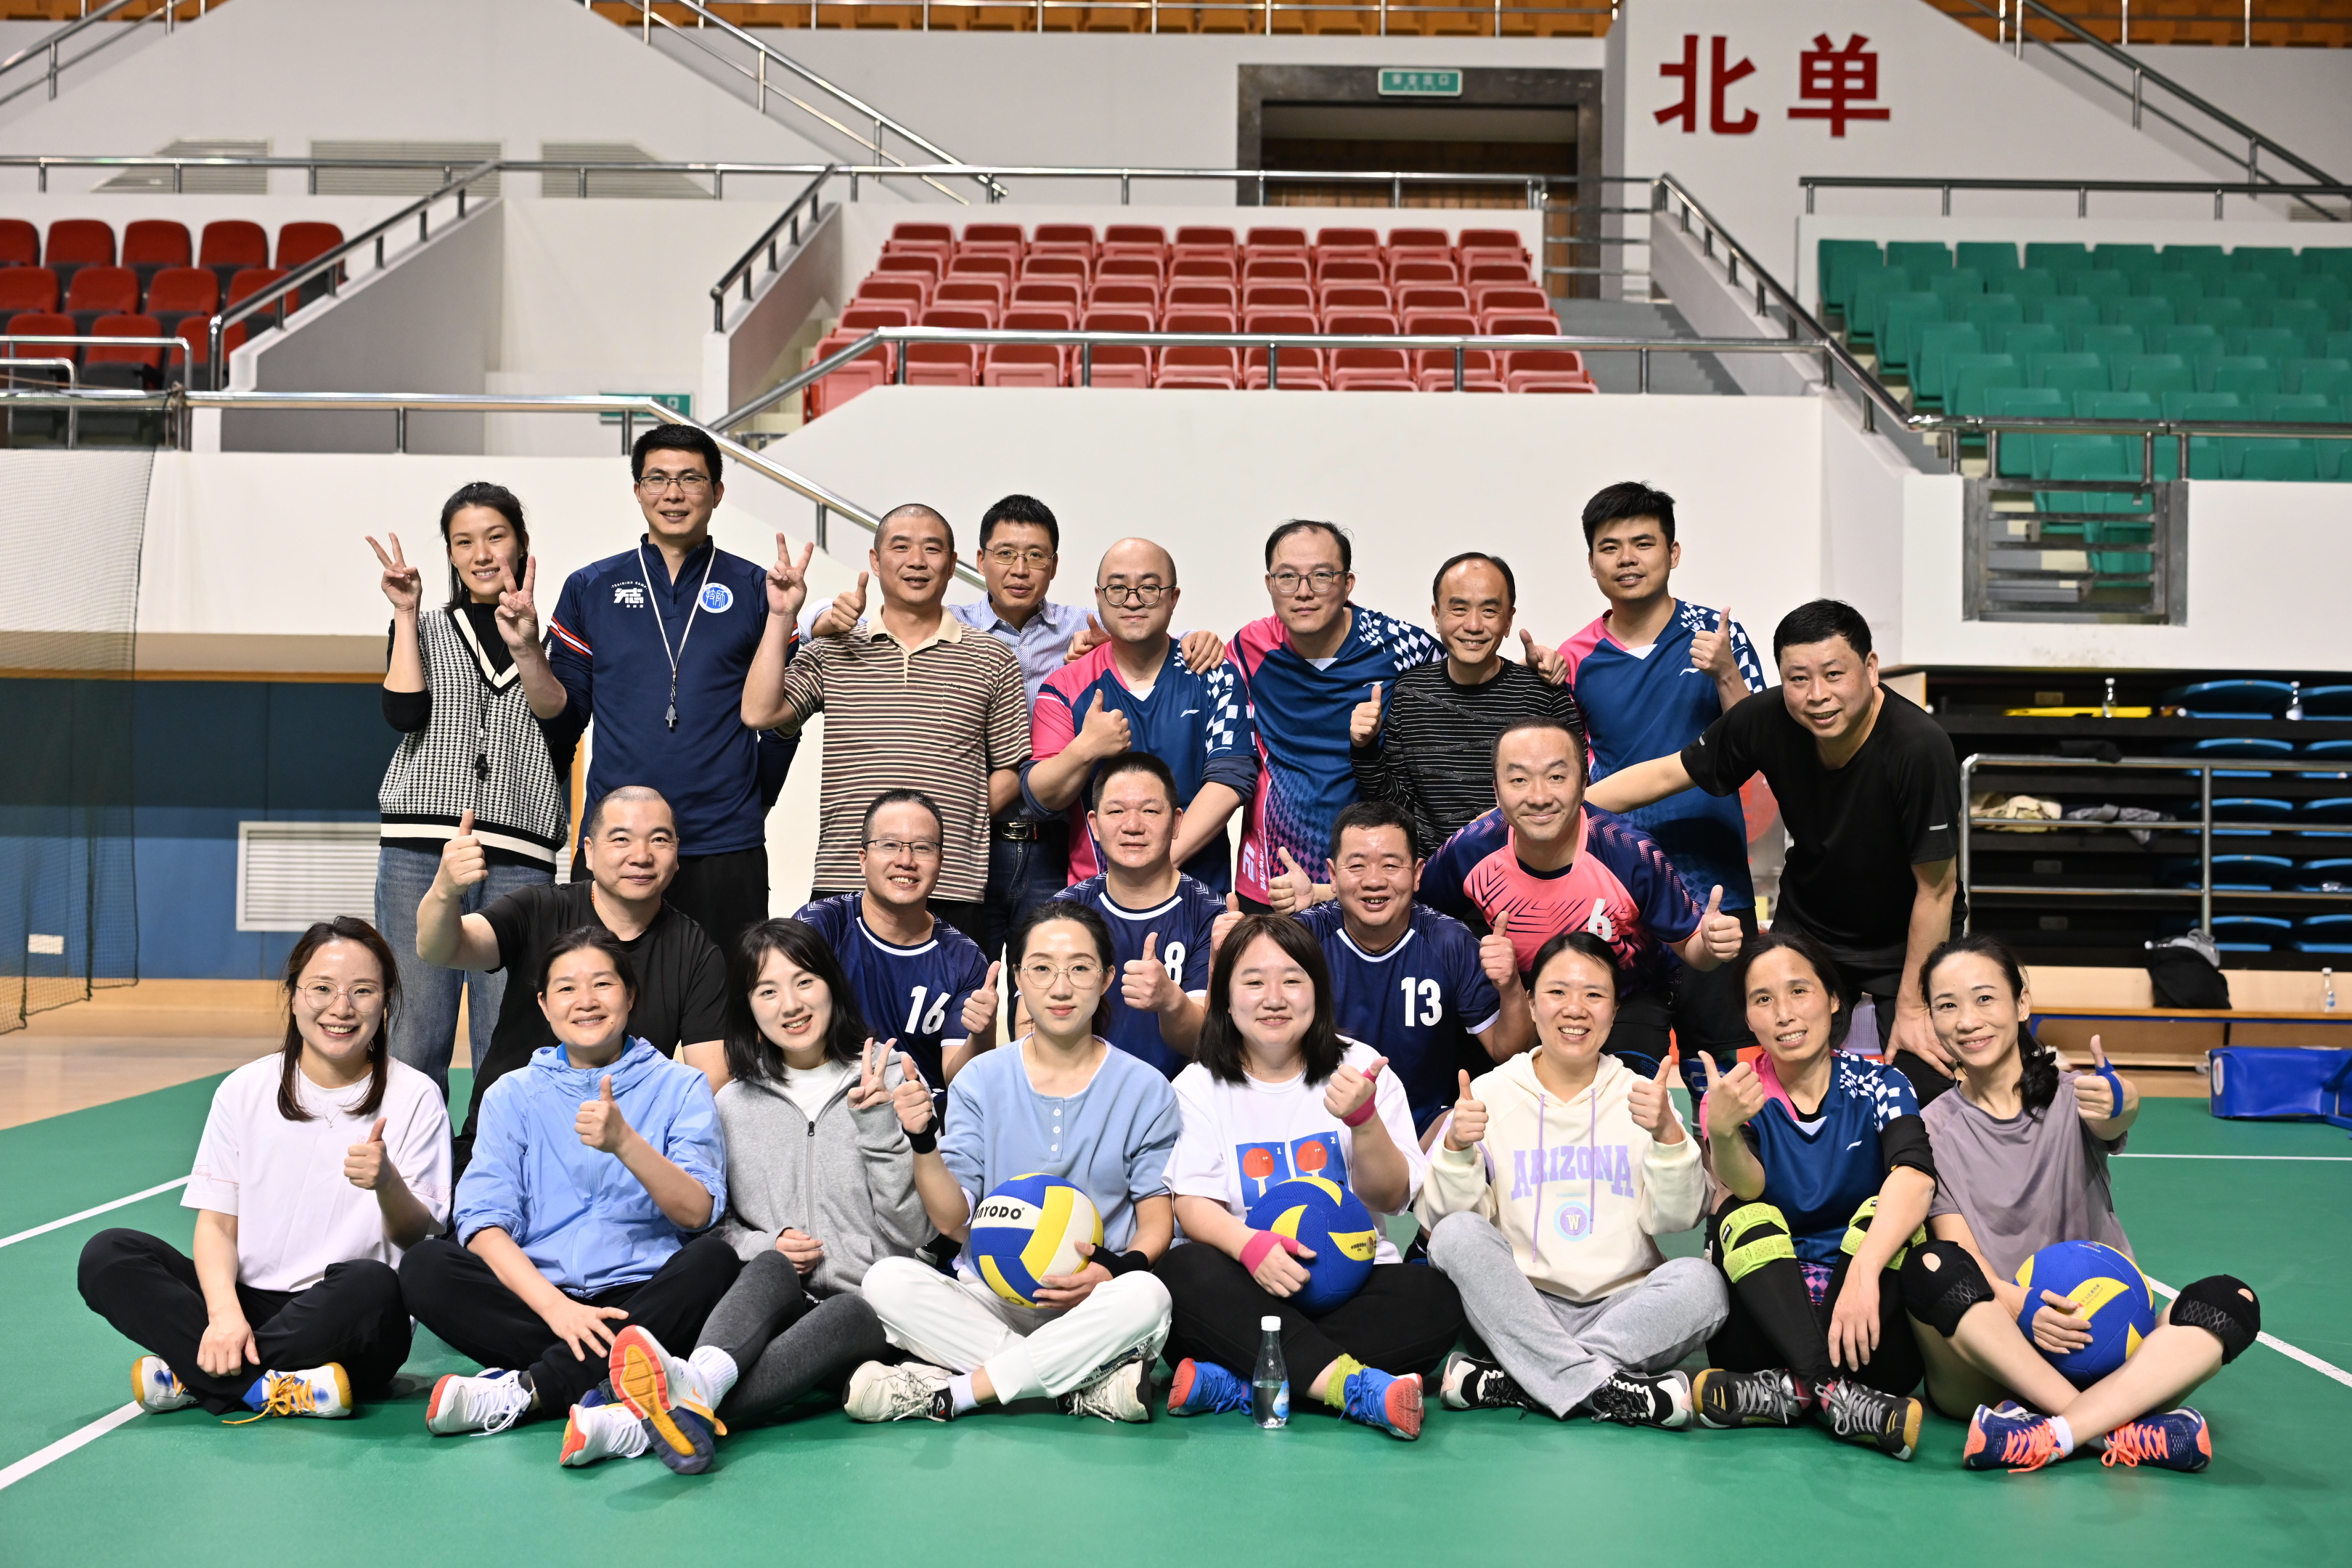 华侨实业工会成功举办首届气排球比赛